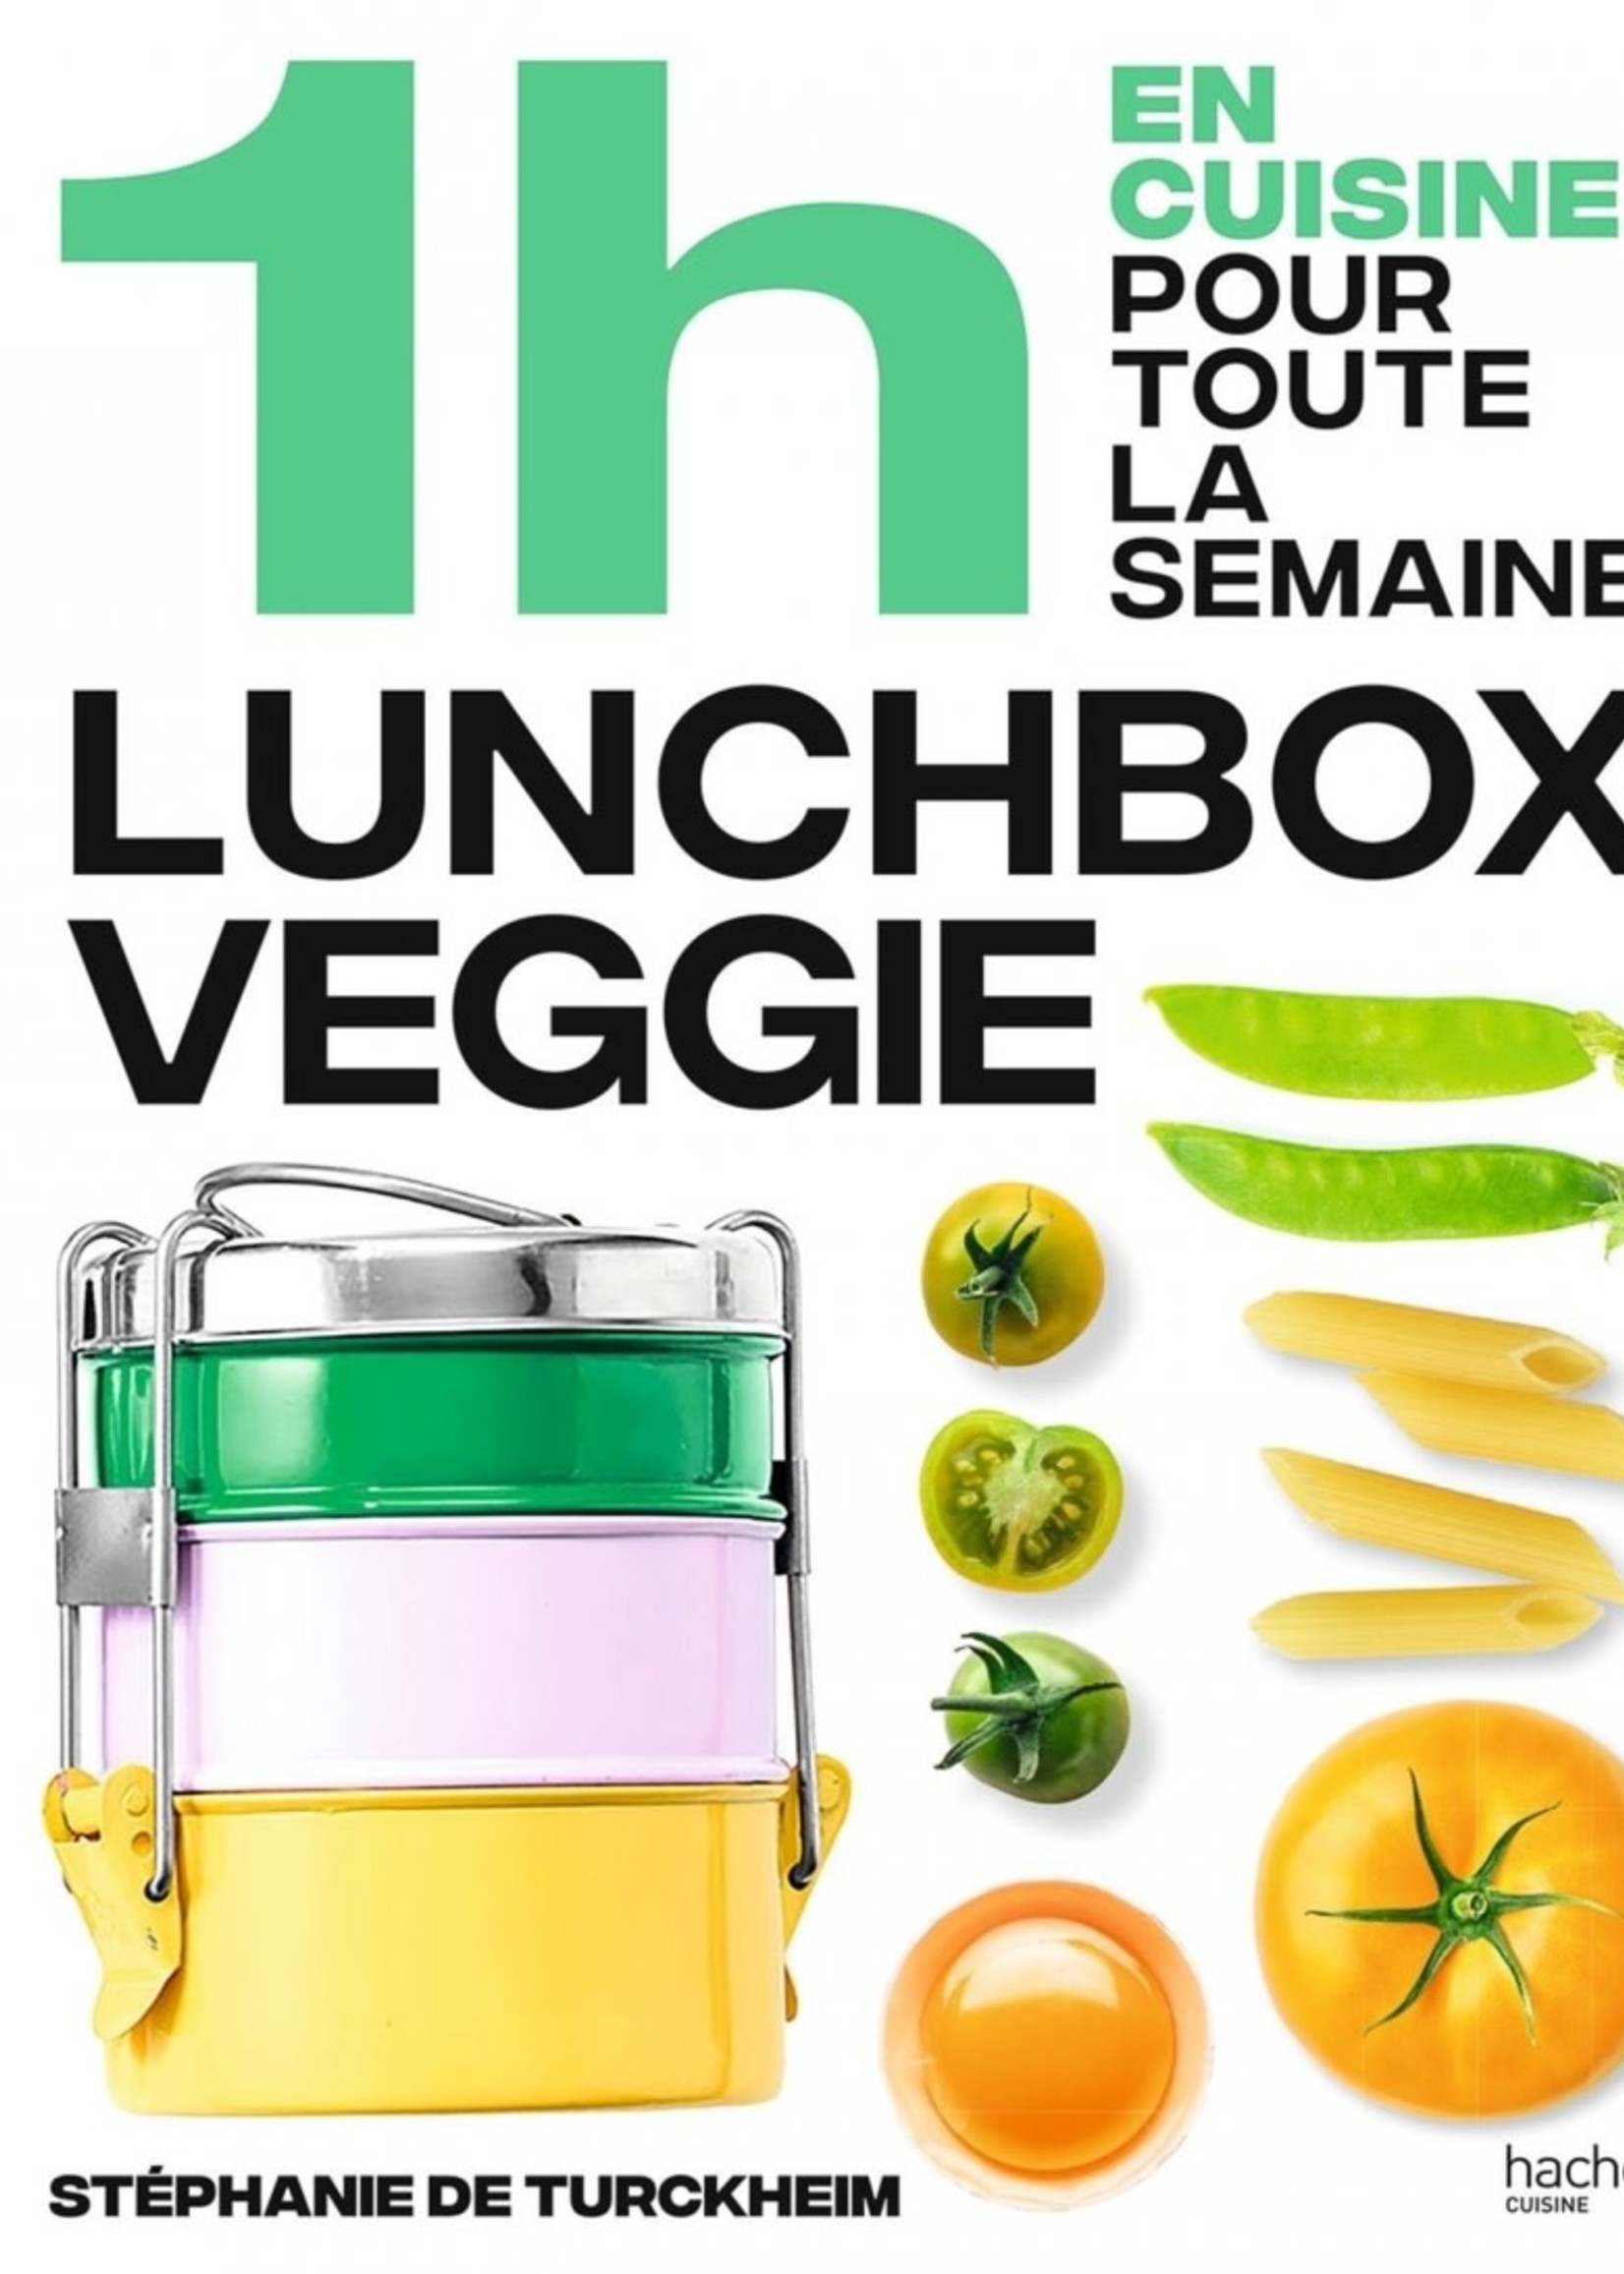 Hachette cuisine 1h en cuisine pour toute la semaine Lunchbox veggie - Stéphanie de Turckheim